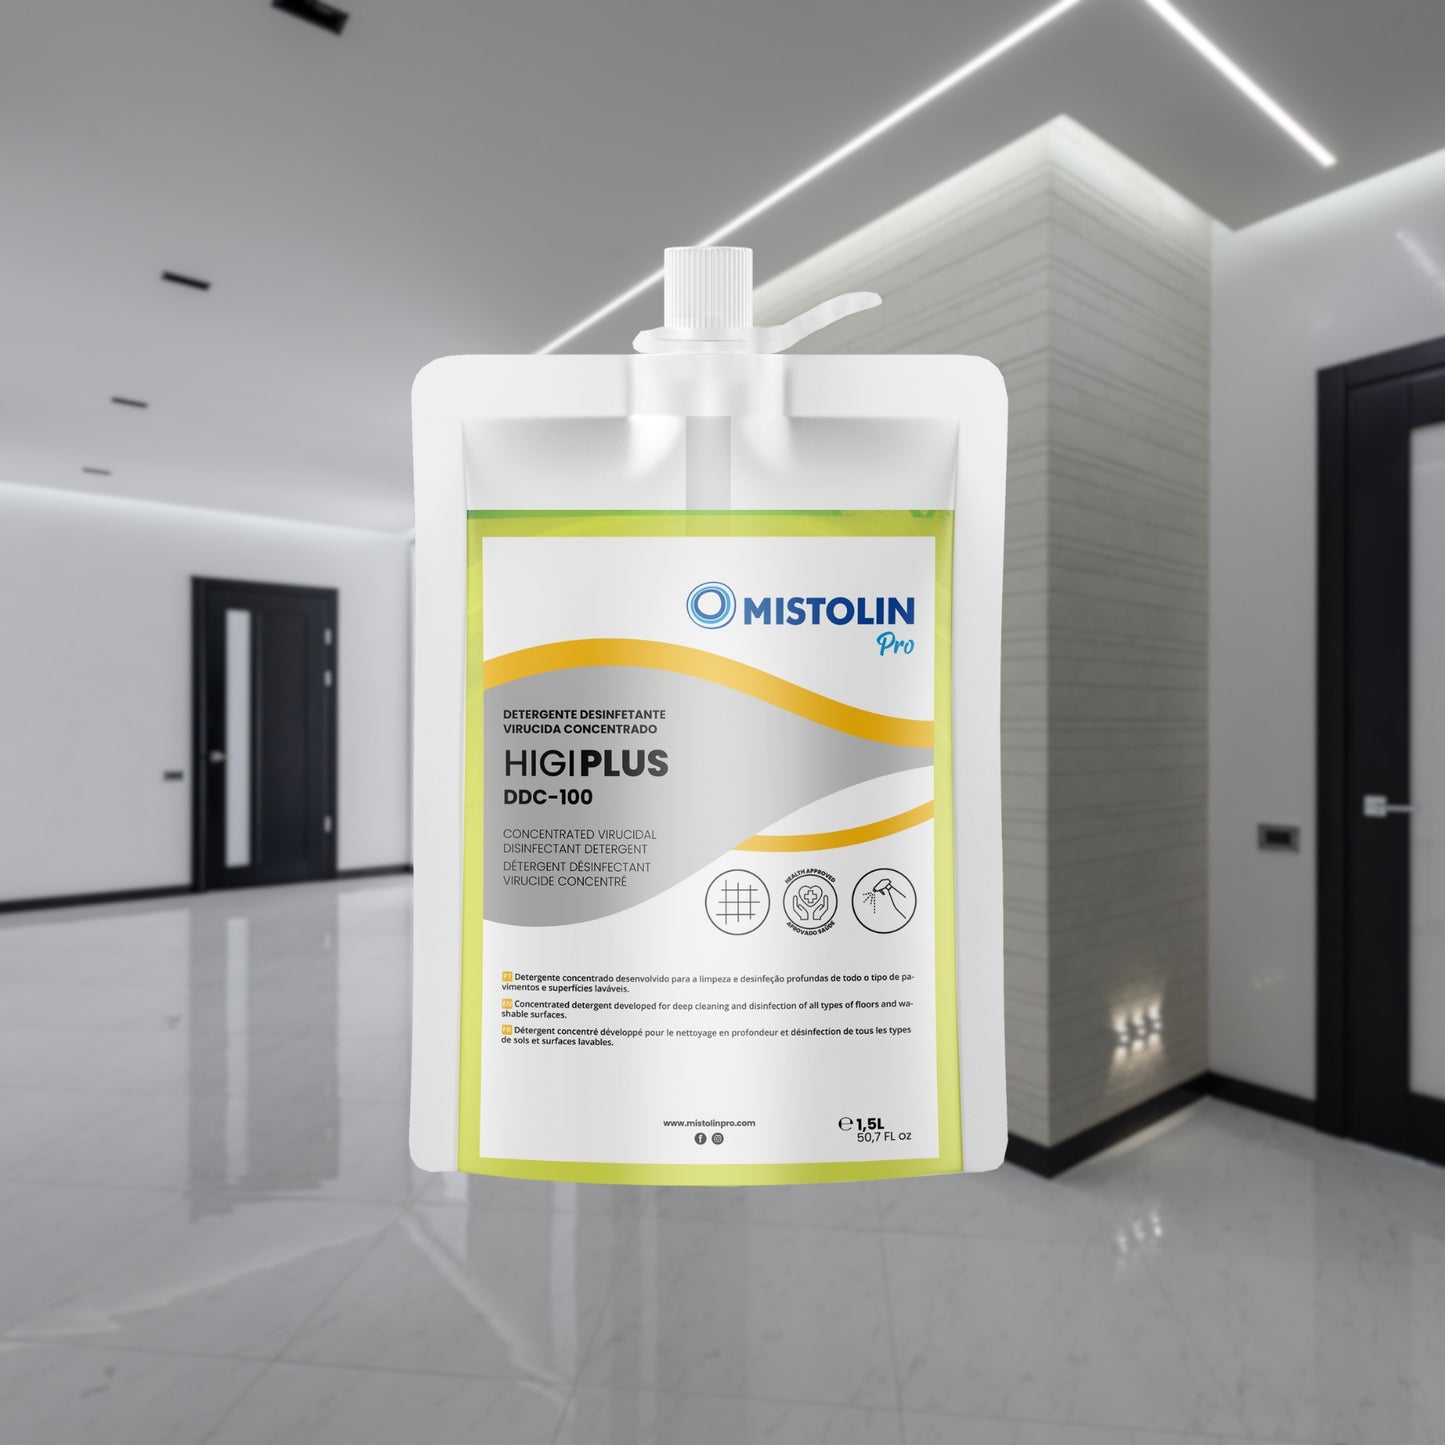 HIGIPLUS DDC-100 DET.DESINF.VIRUCIDA CONC.1.5LT, é um detergente concentrado desenvolvido para a limpeza e desinfeção profundas de todo o tipo de pavimentos e superfícies laváveis.